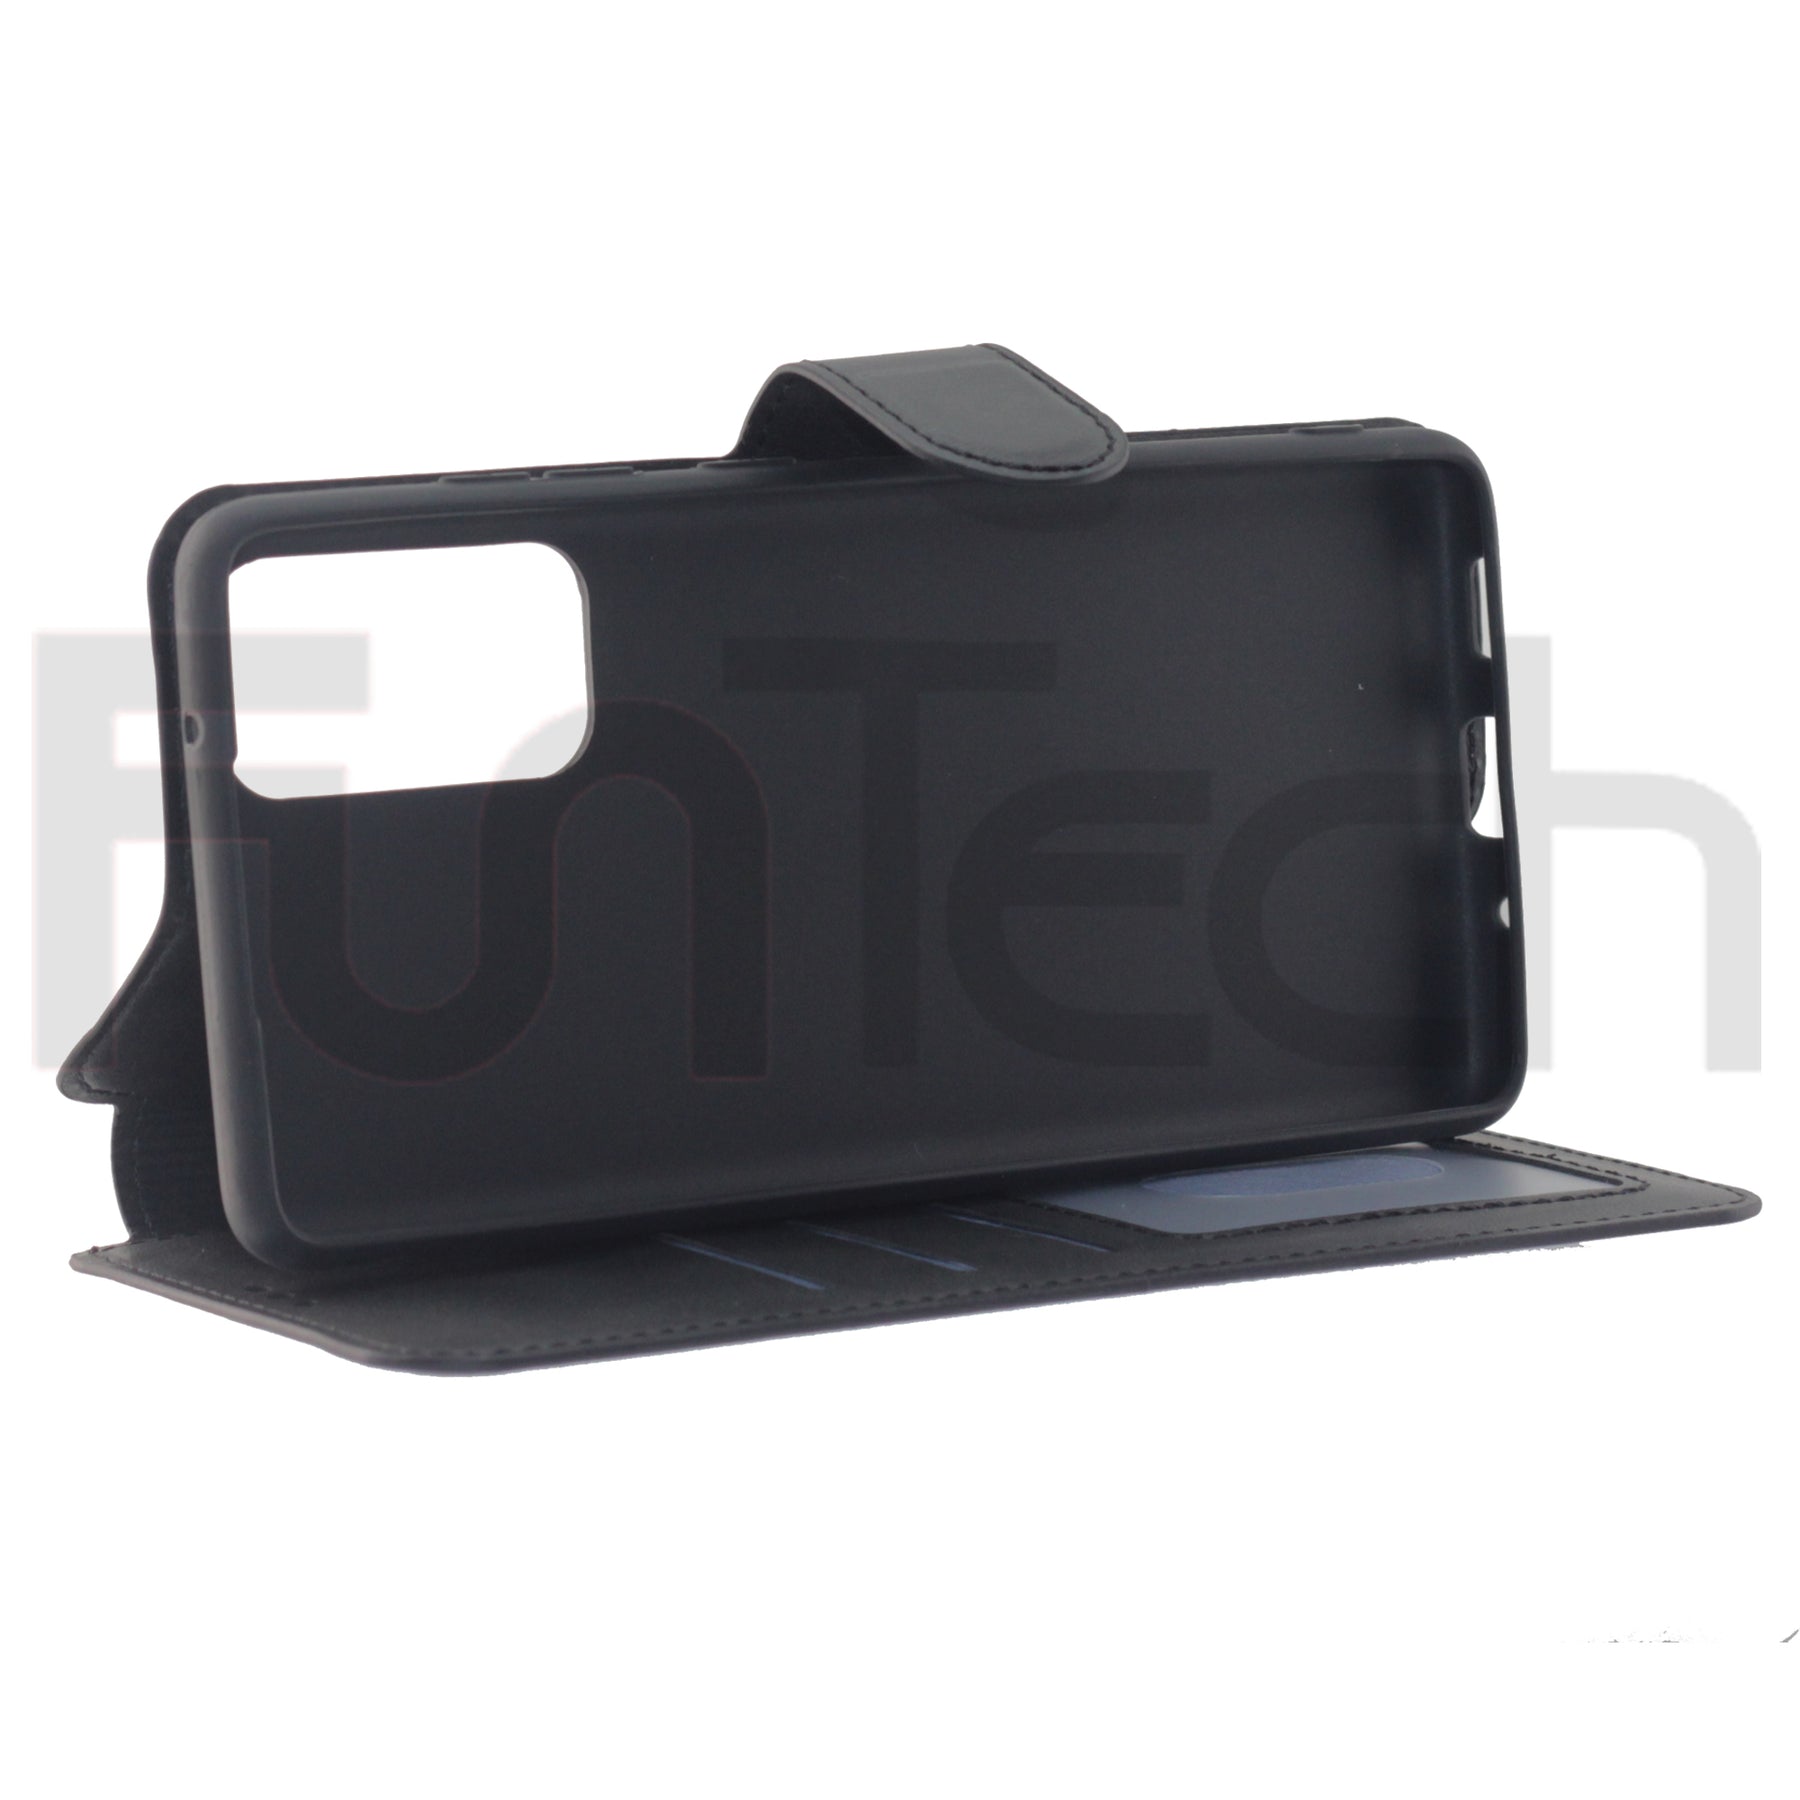 Samsung S20 FE, Leather Wallet Case, Color Black.